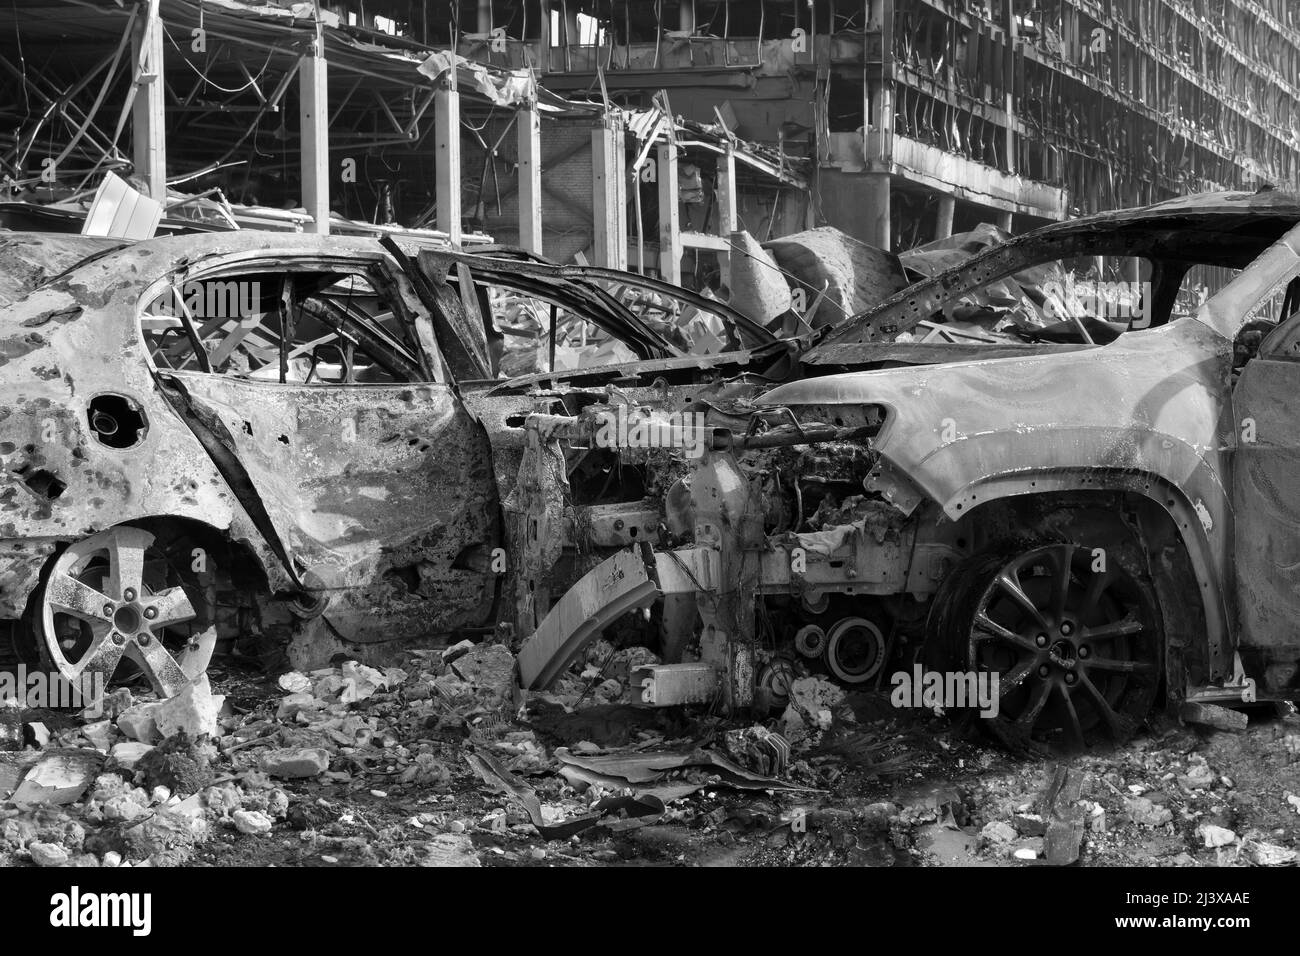 Après les bombardements civils, la ville a endommagé sa voiture. 2022 invasion russe de l'Ukraine la ville déchirée par la guerre a détruit la voiture brûlée. Attaque à la bombe guerre de Russie Banque D'Images